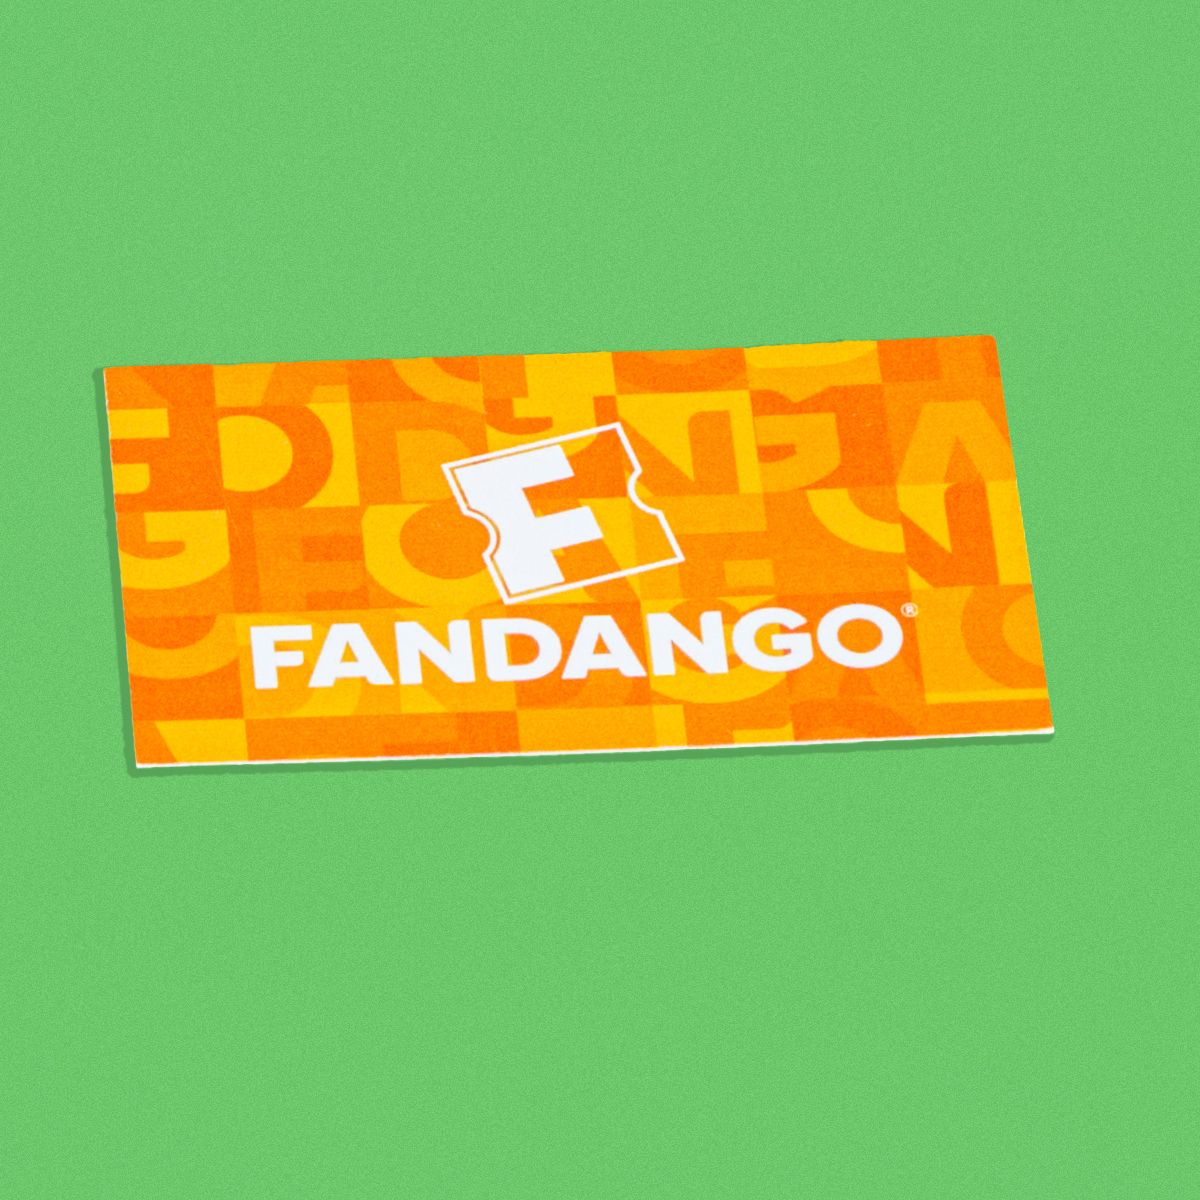 Staycation Box - Fandango.jpg